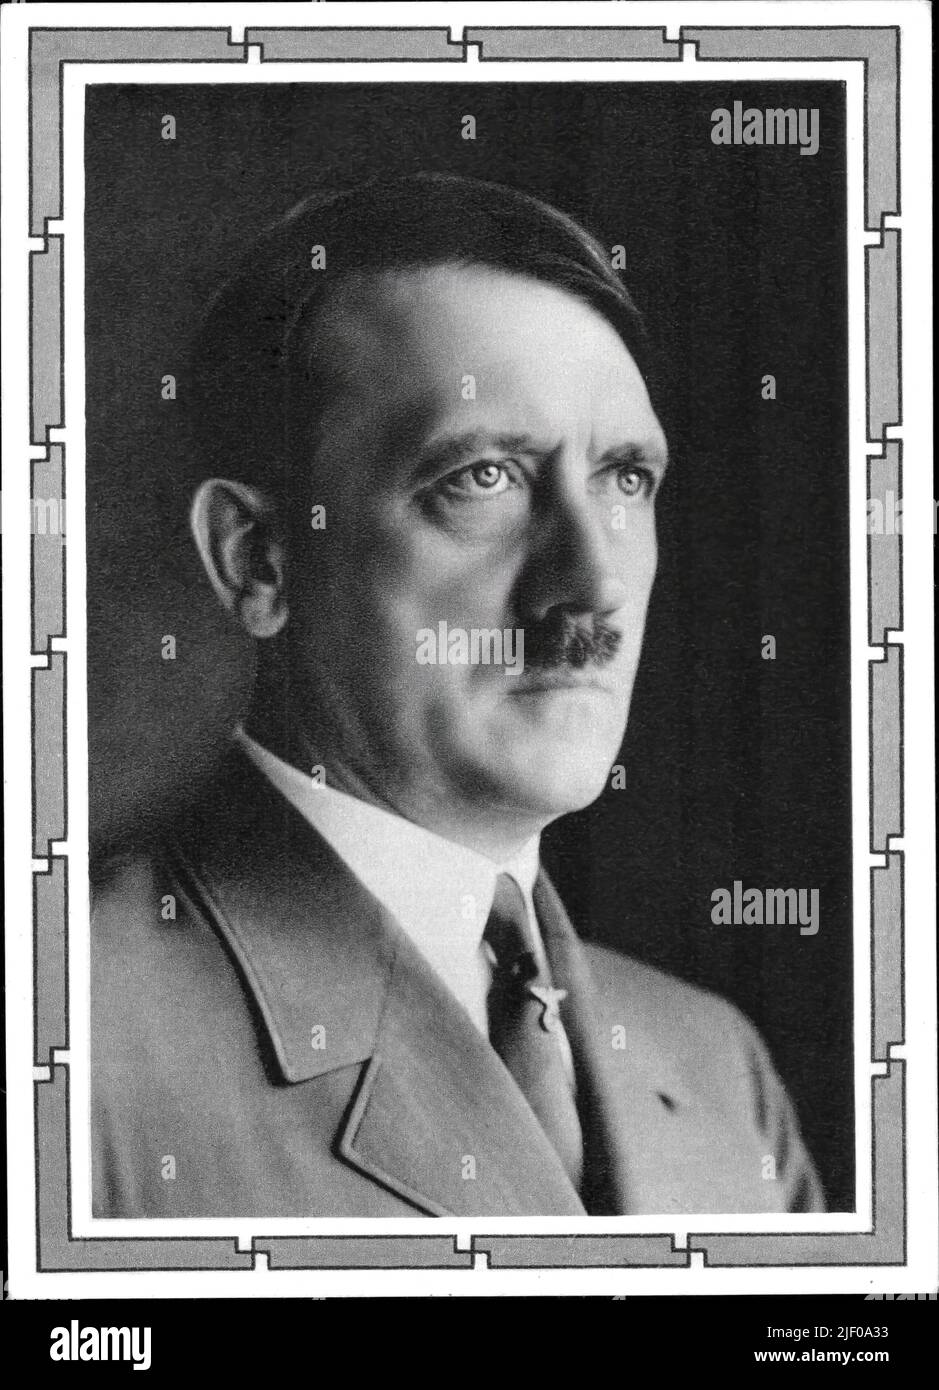 ADOLF HITLER 30's oficial Studio Hoffmann Retrato en el marco de tema de la esvástica original superposición de Fuhrer Adolf Hitler imagen de propaganda en la Alemania Nazi para carteles y postales Foto de stock